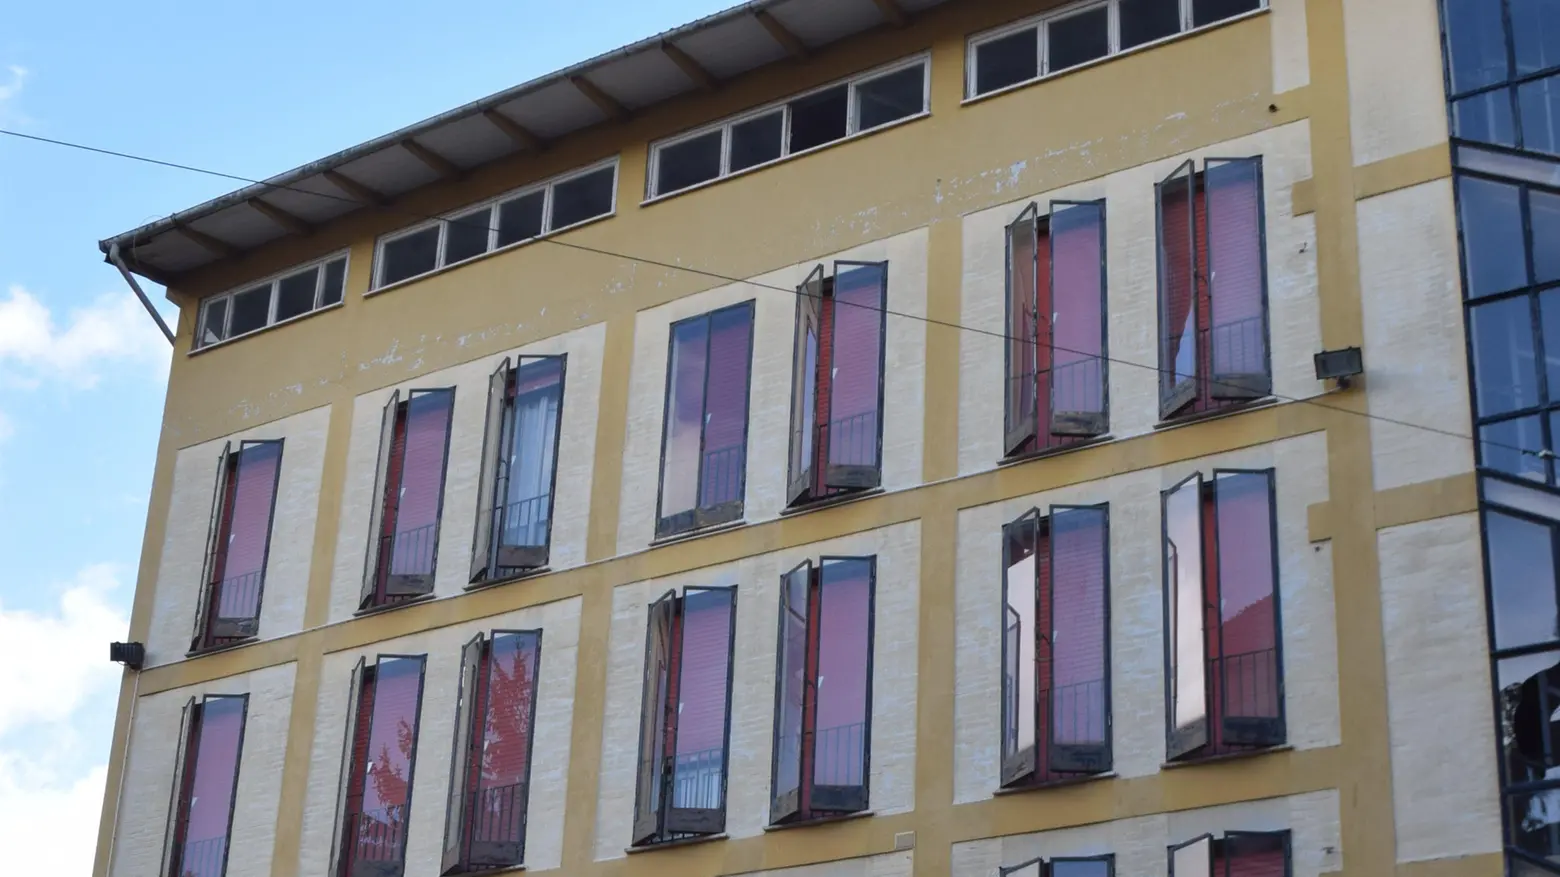 Palazzo Ex Coni-Fit da demolire  "Meglio trasformarlo in liceo"